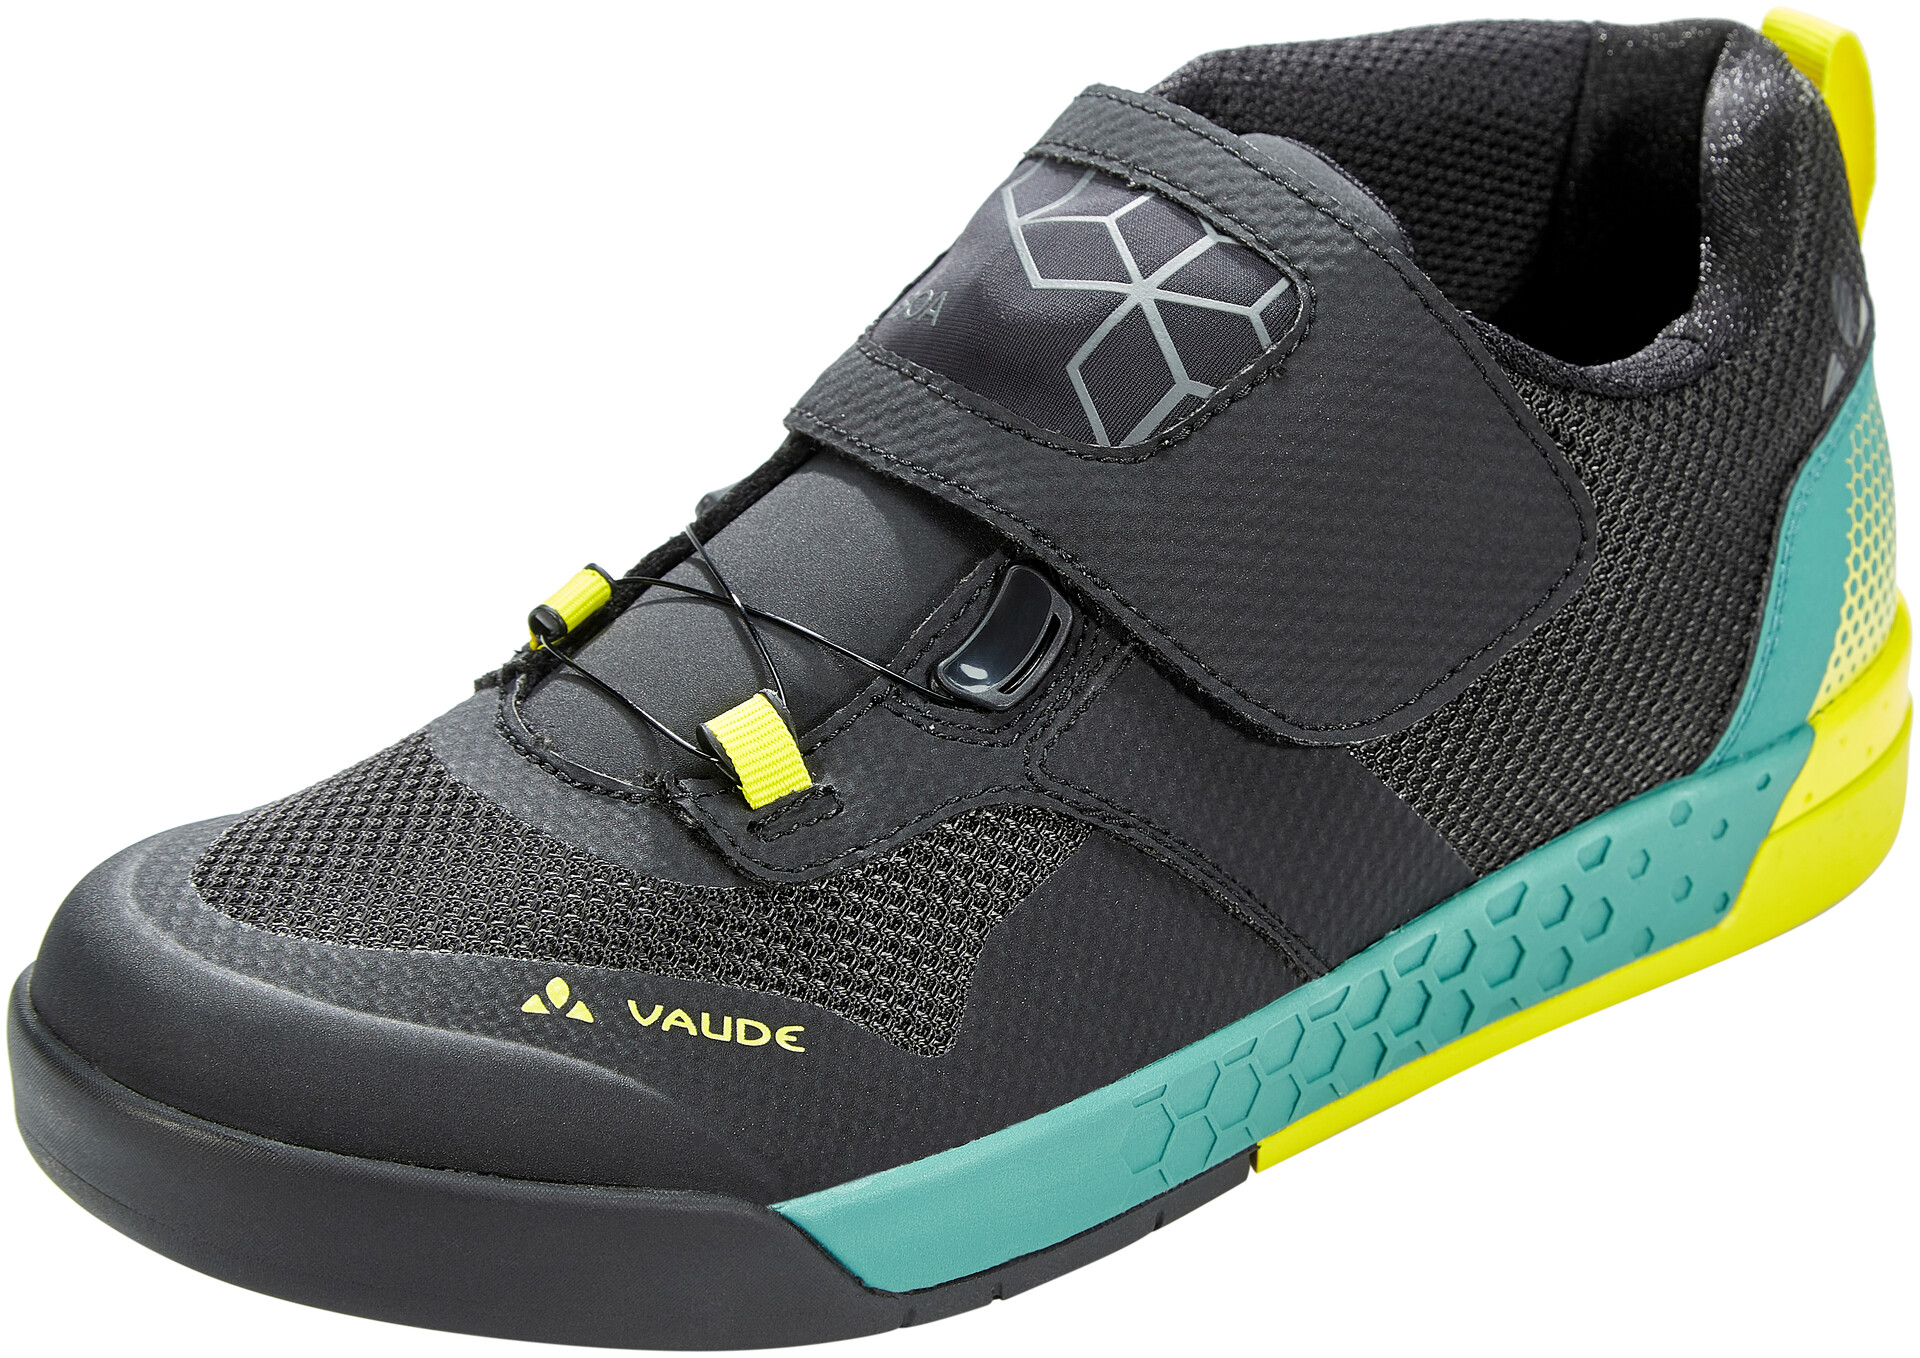 vaude flat pedal shoes